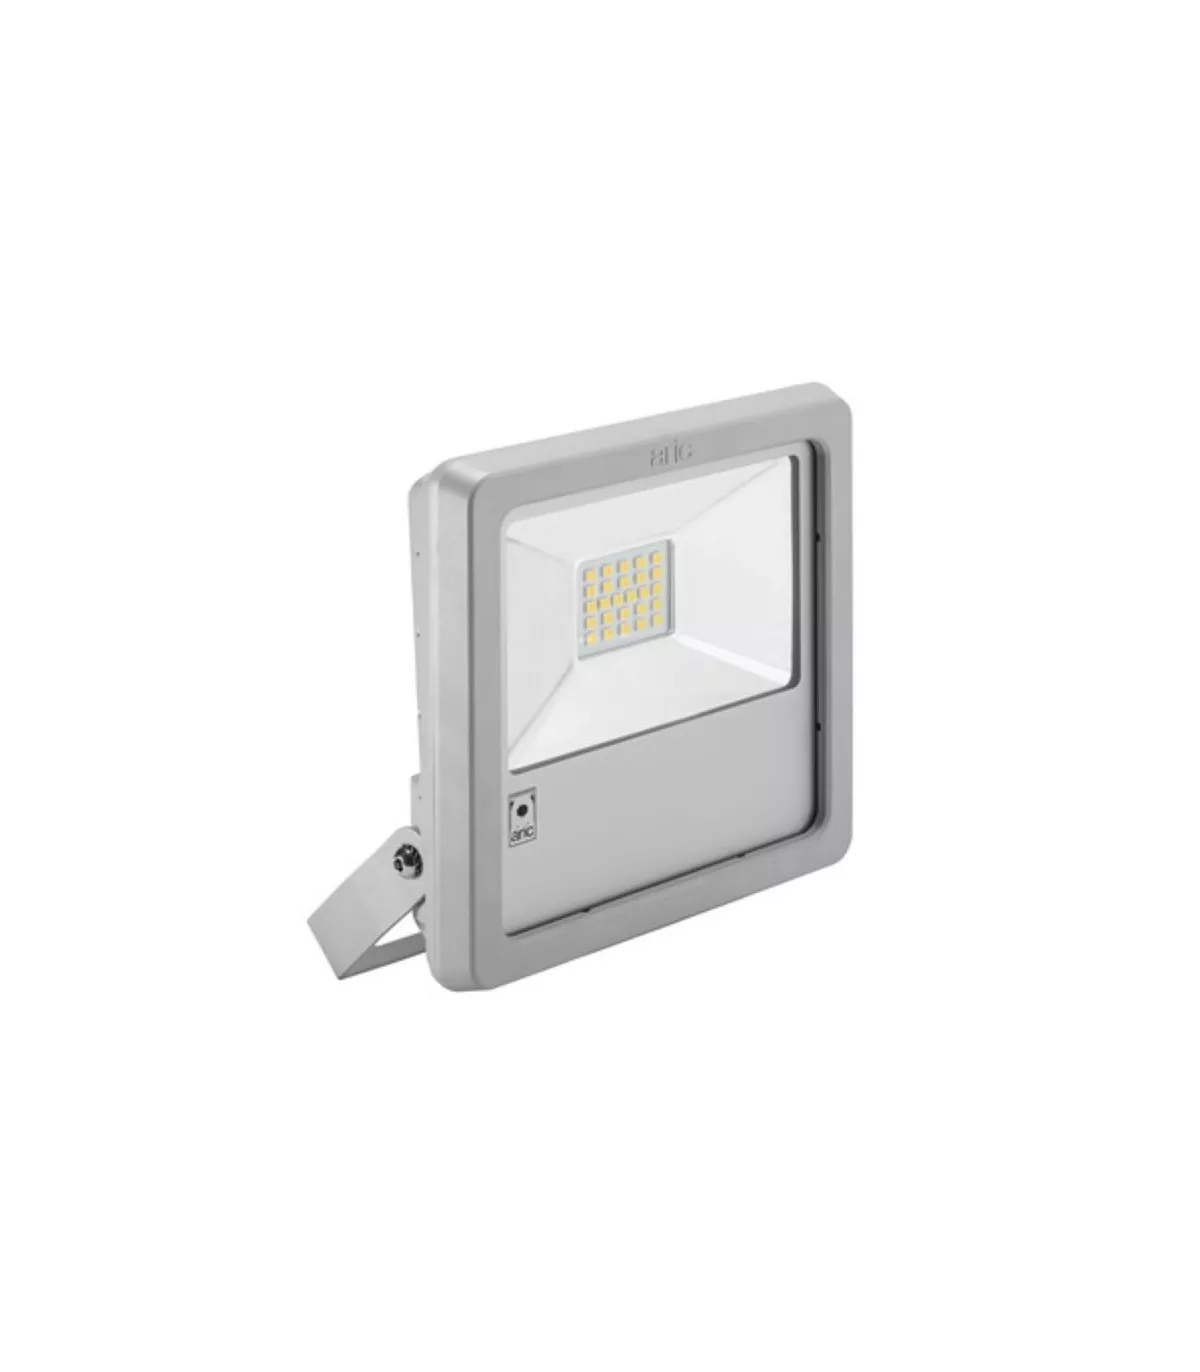 ARIC 50977  Projecteur extérieur gris IP65 LED 200W Blanc froid